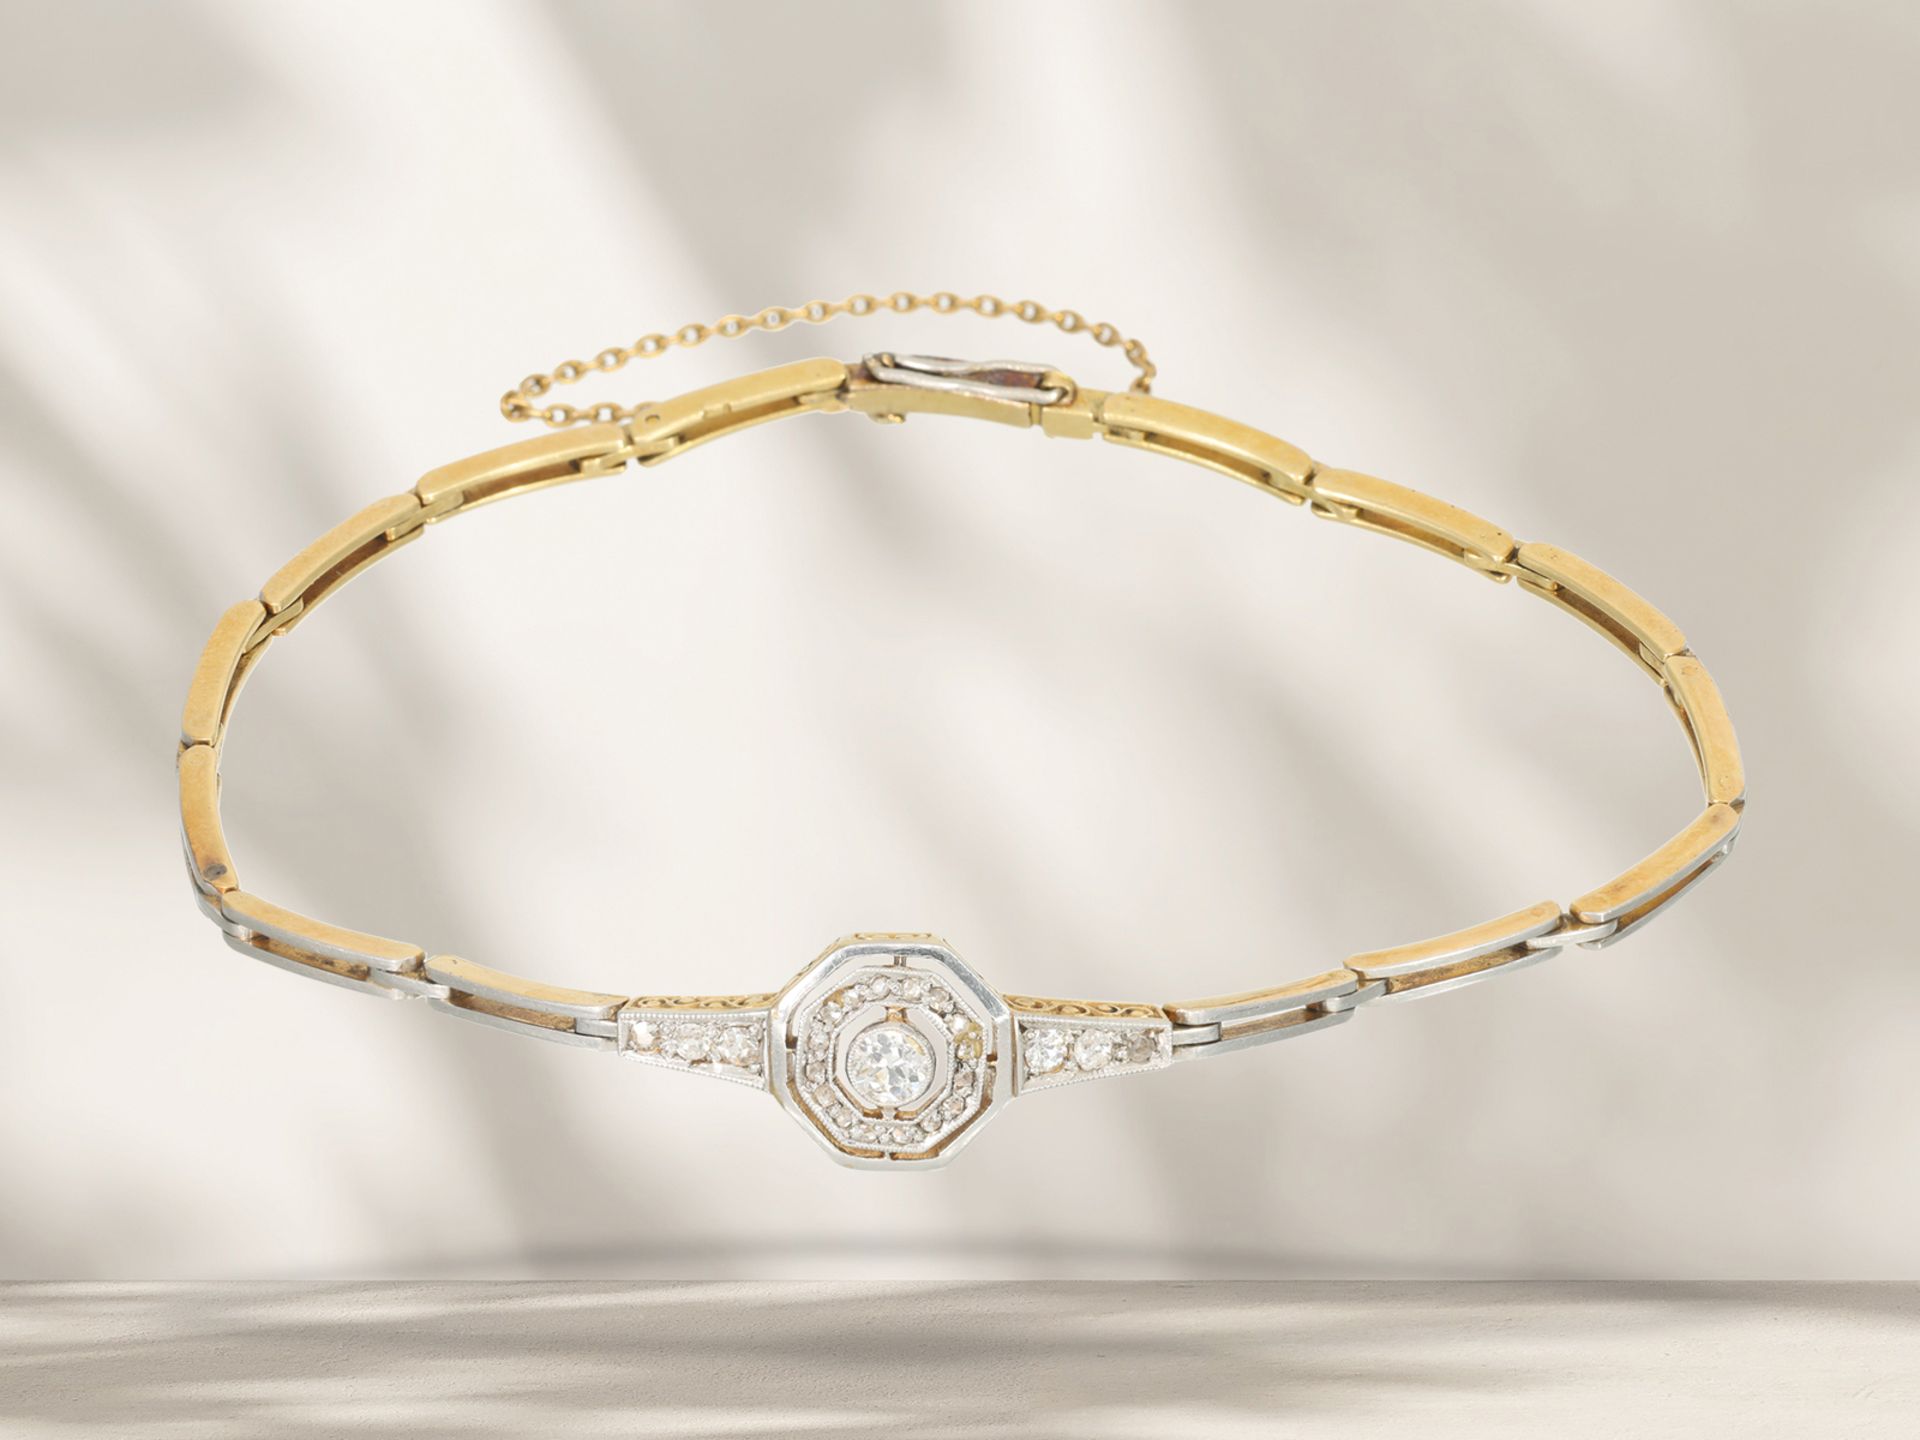 Armband: sehr schönes antikes und feines Armband mit Diamantbesatz, 18K Gelbgold, platiniert